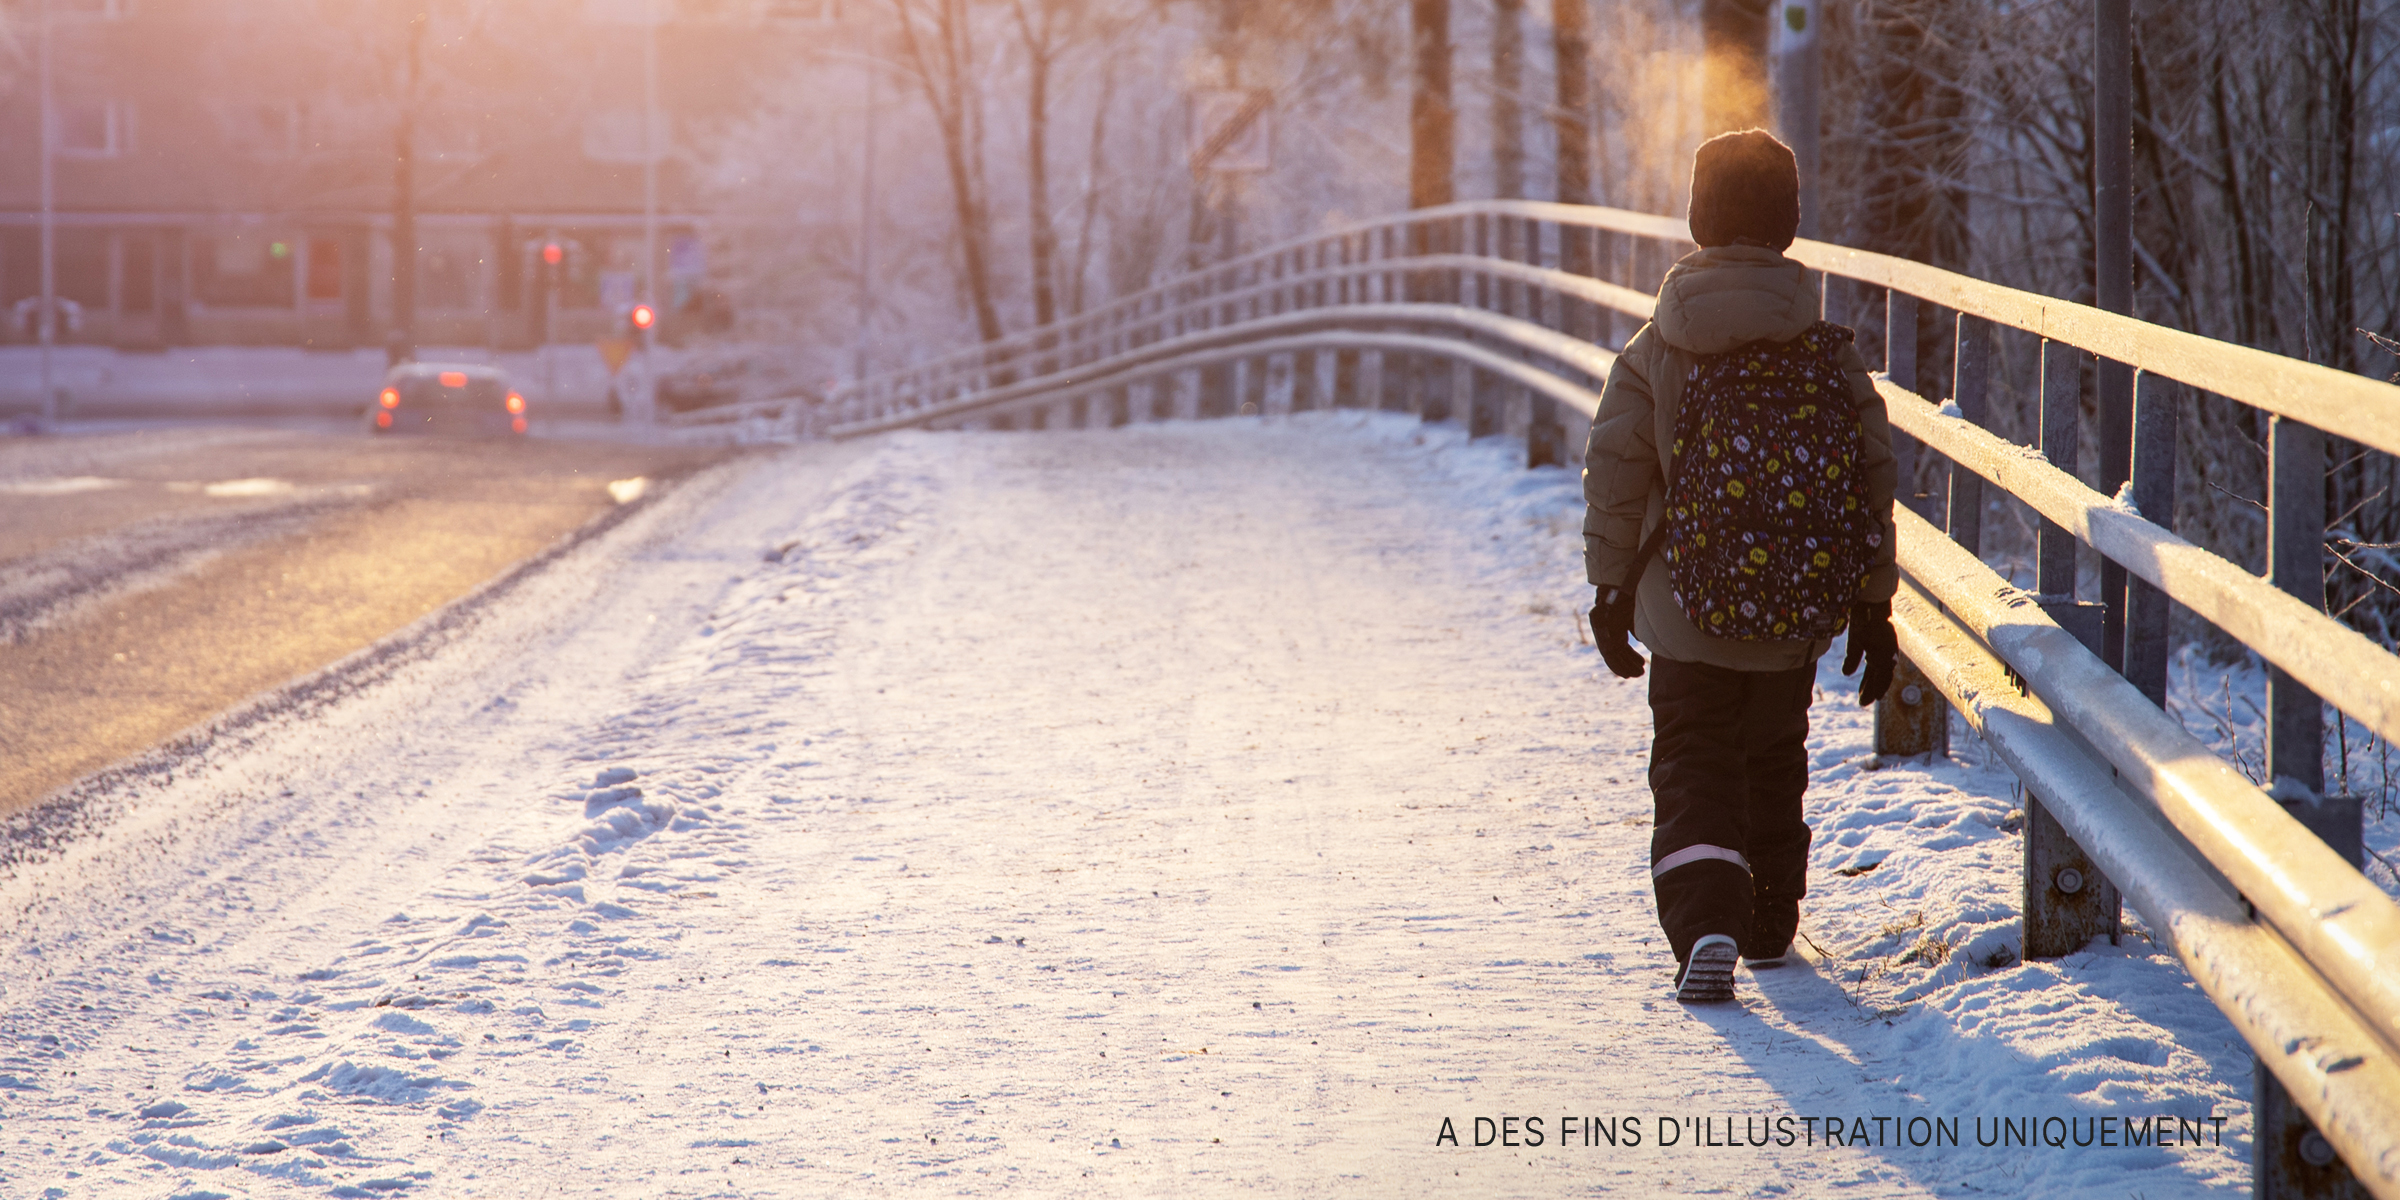 Un jeune garçon marchant seul sur une route enneigée | Source : Shutterstock